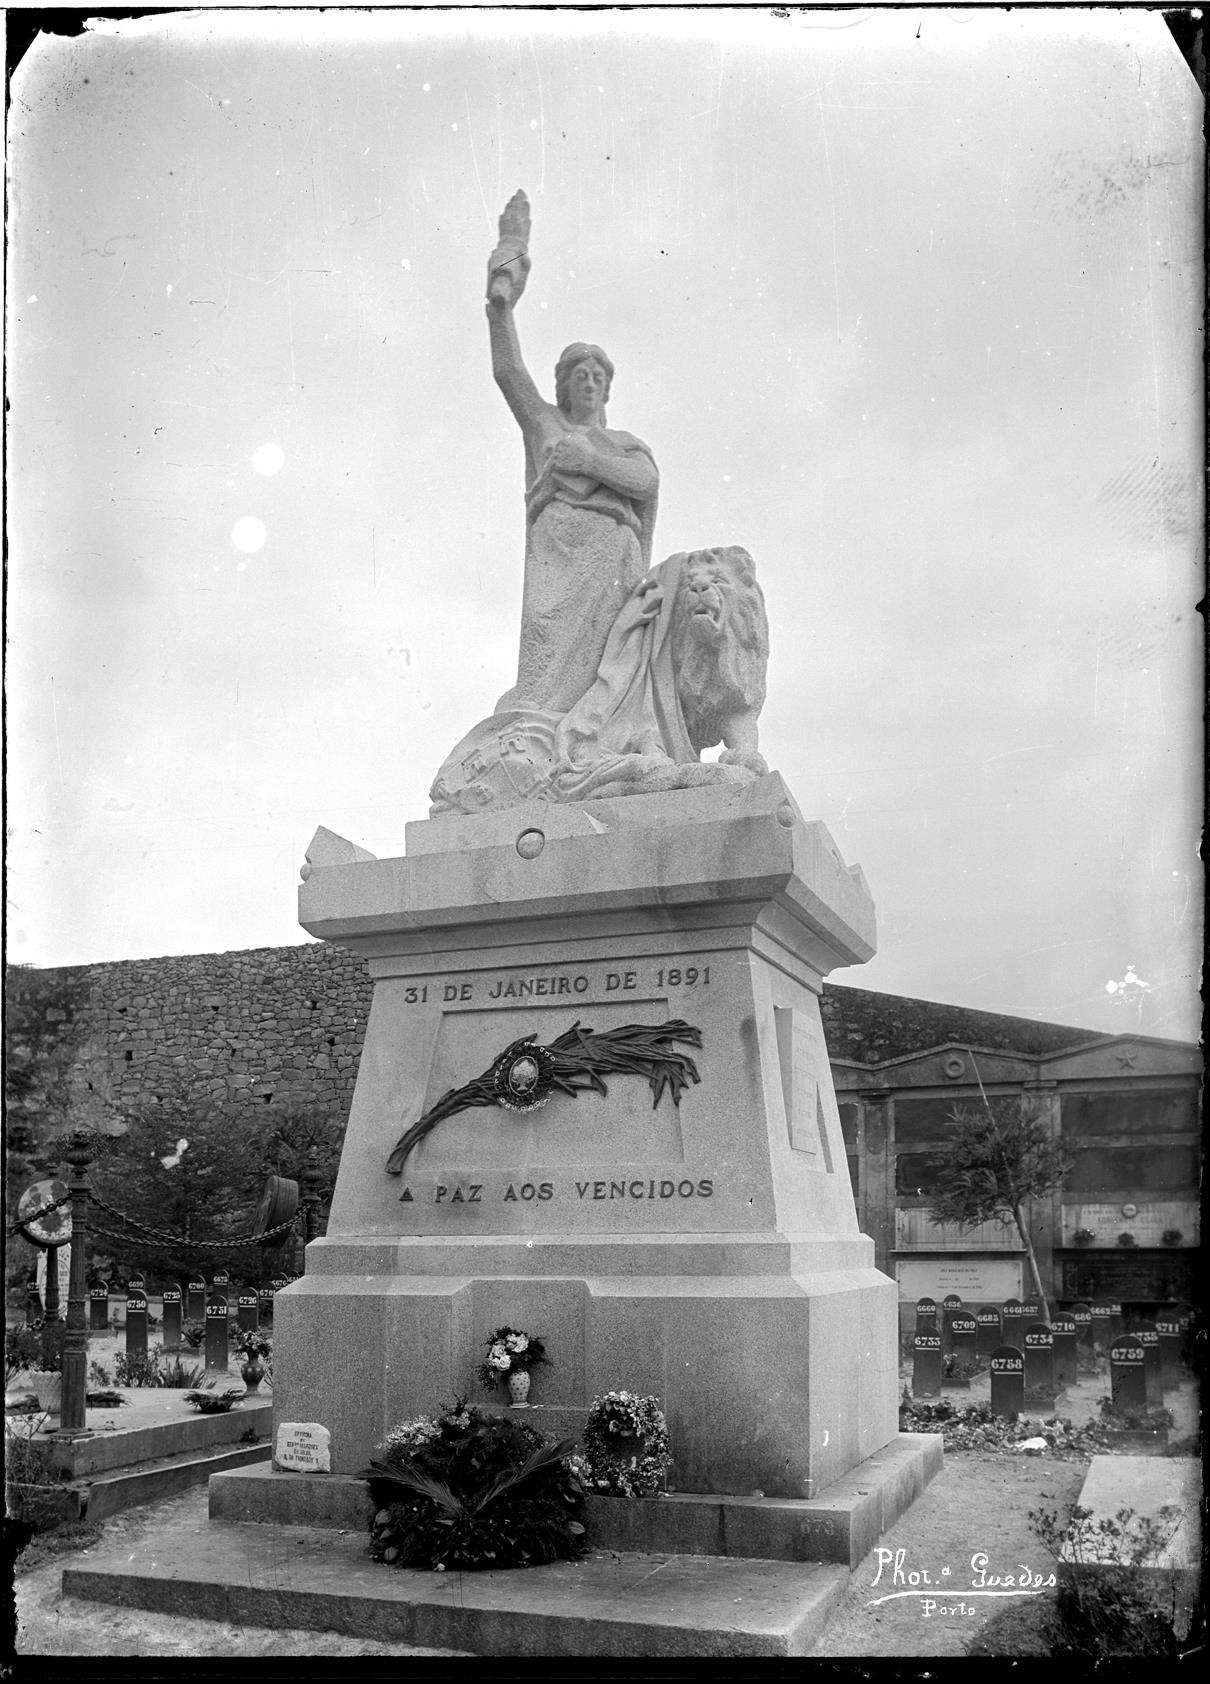 Cemitério do Prado do Repouso : estátua comemorativa aos vencidos do 31 de Janeiro